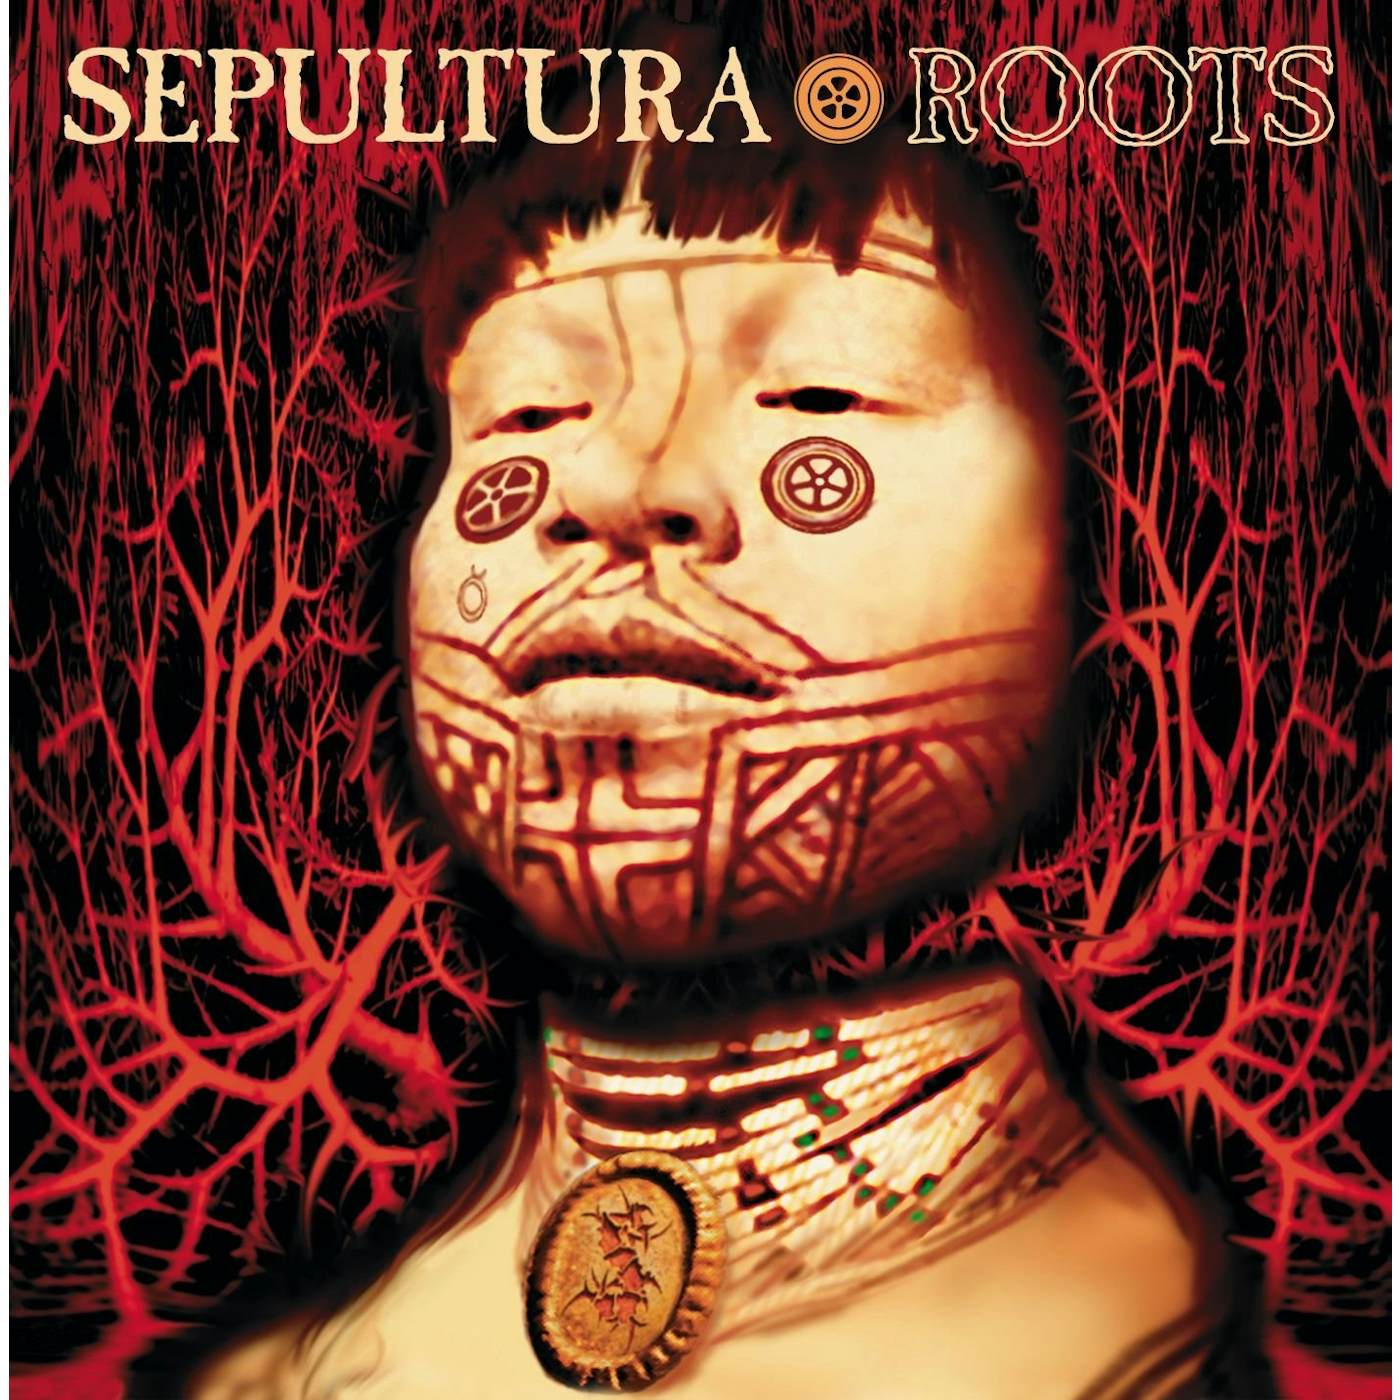 Sepultura Roots